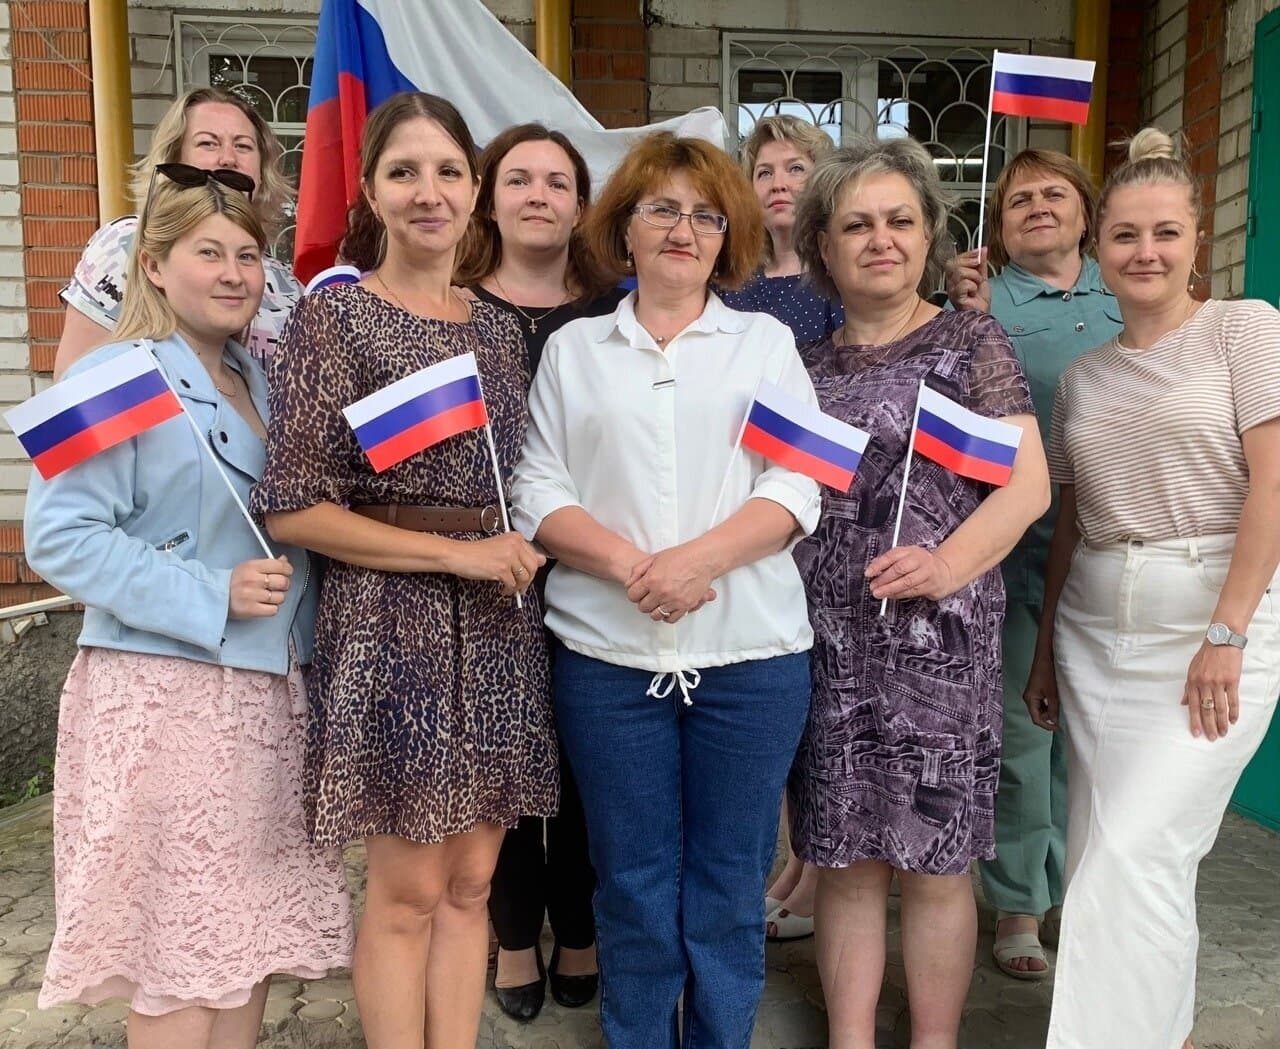 12 июня-День России